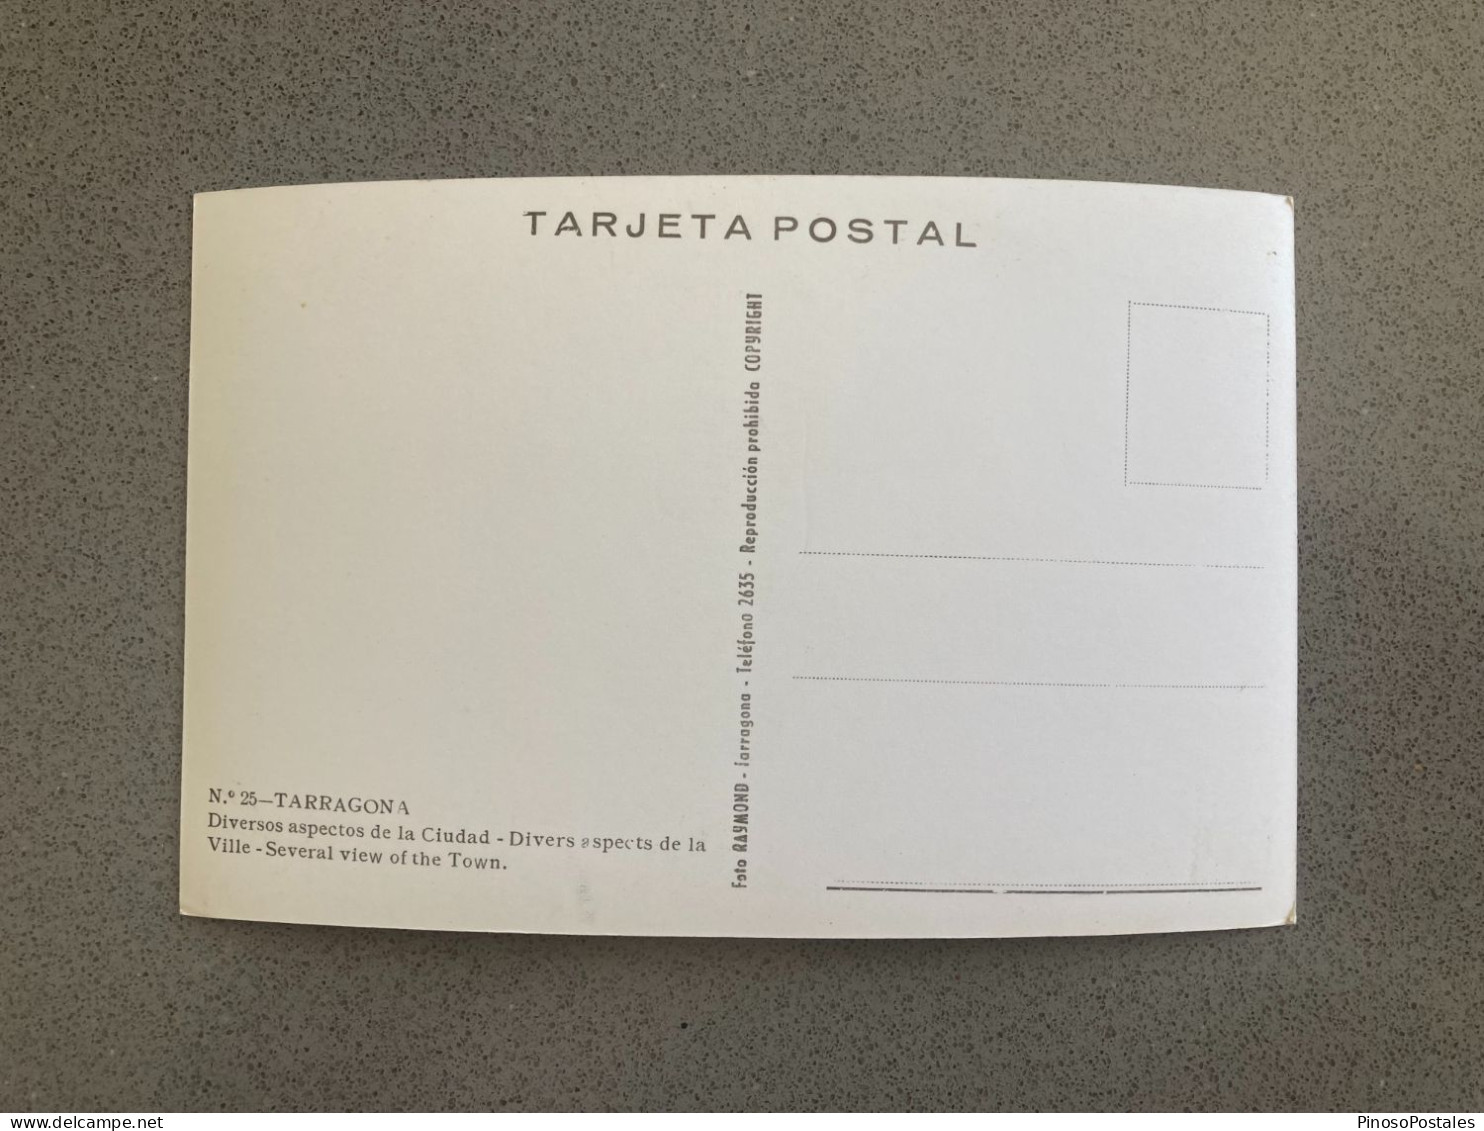 Recuerdo De Tarragona Diversos Aspectos De La Ciudad Carte Postale Postcard - Tarragona